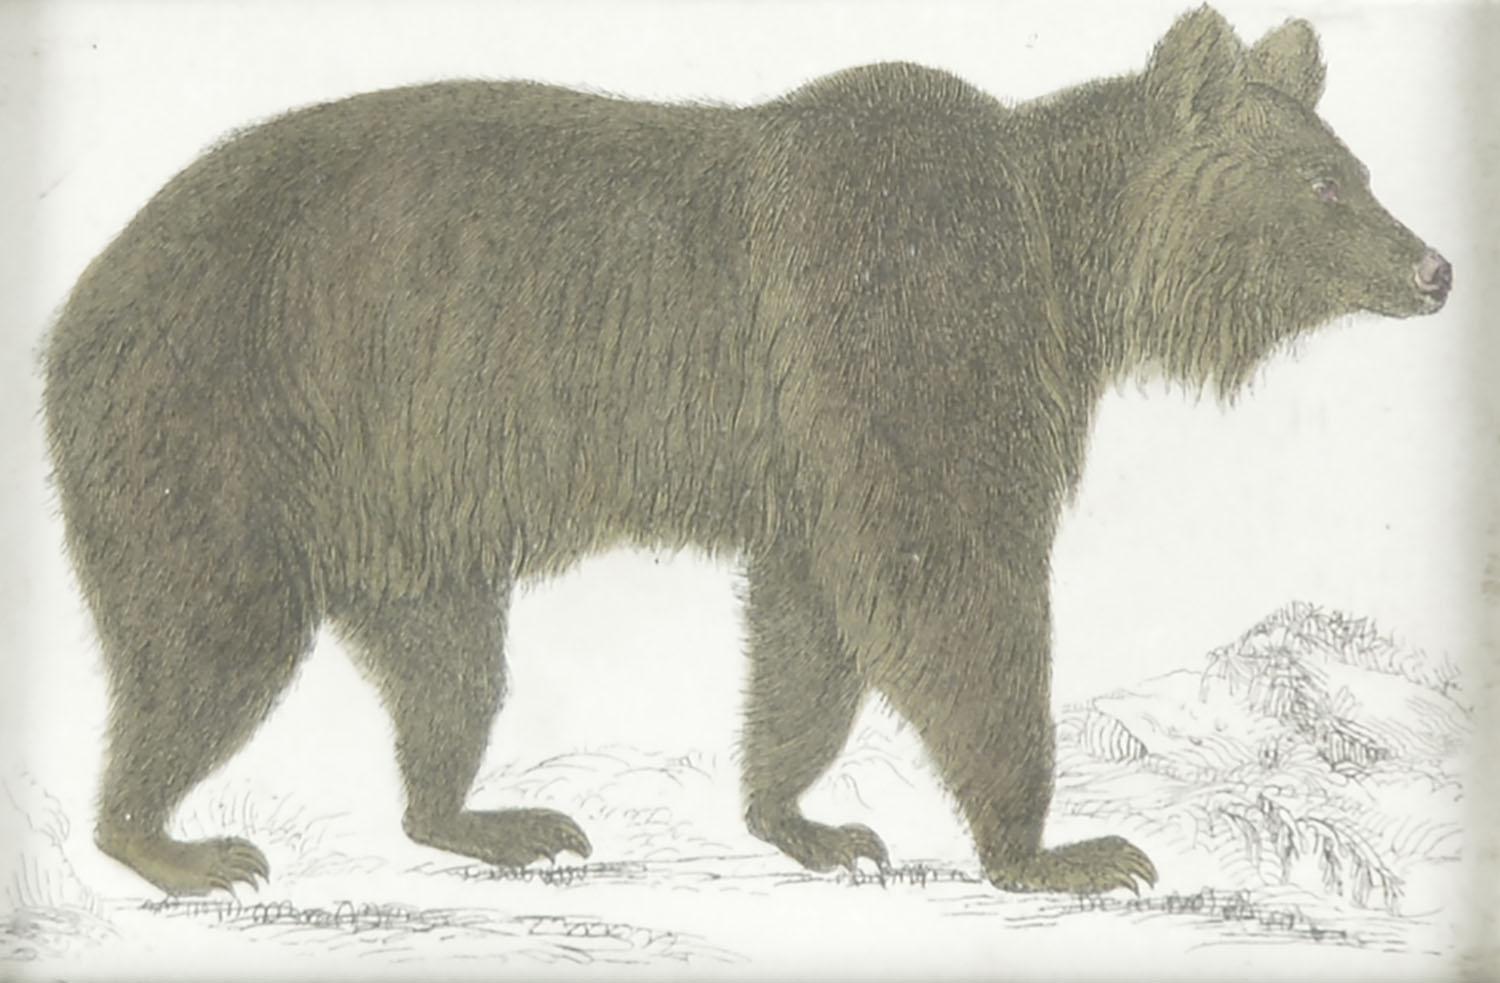 Folk Art Original Antique Print of a Brown Bear, 1847